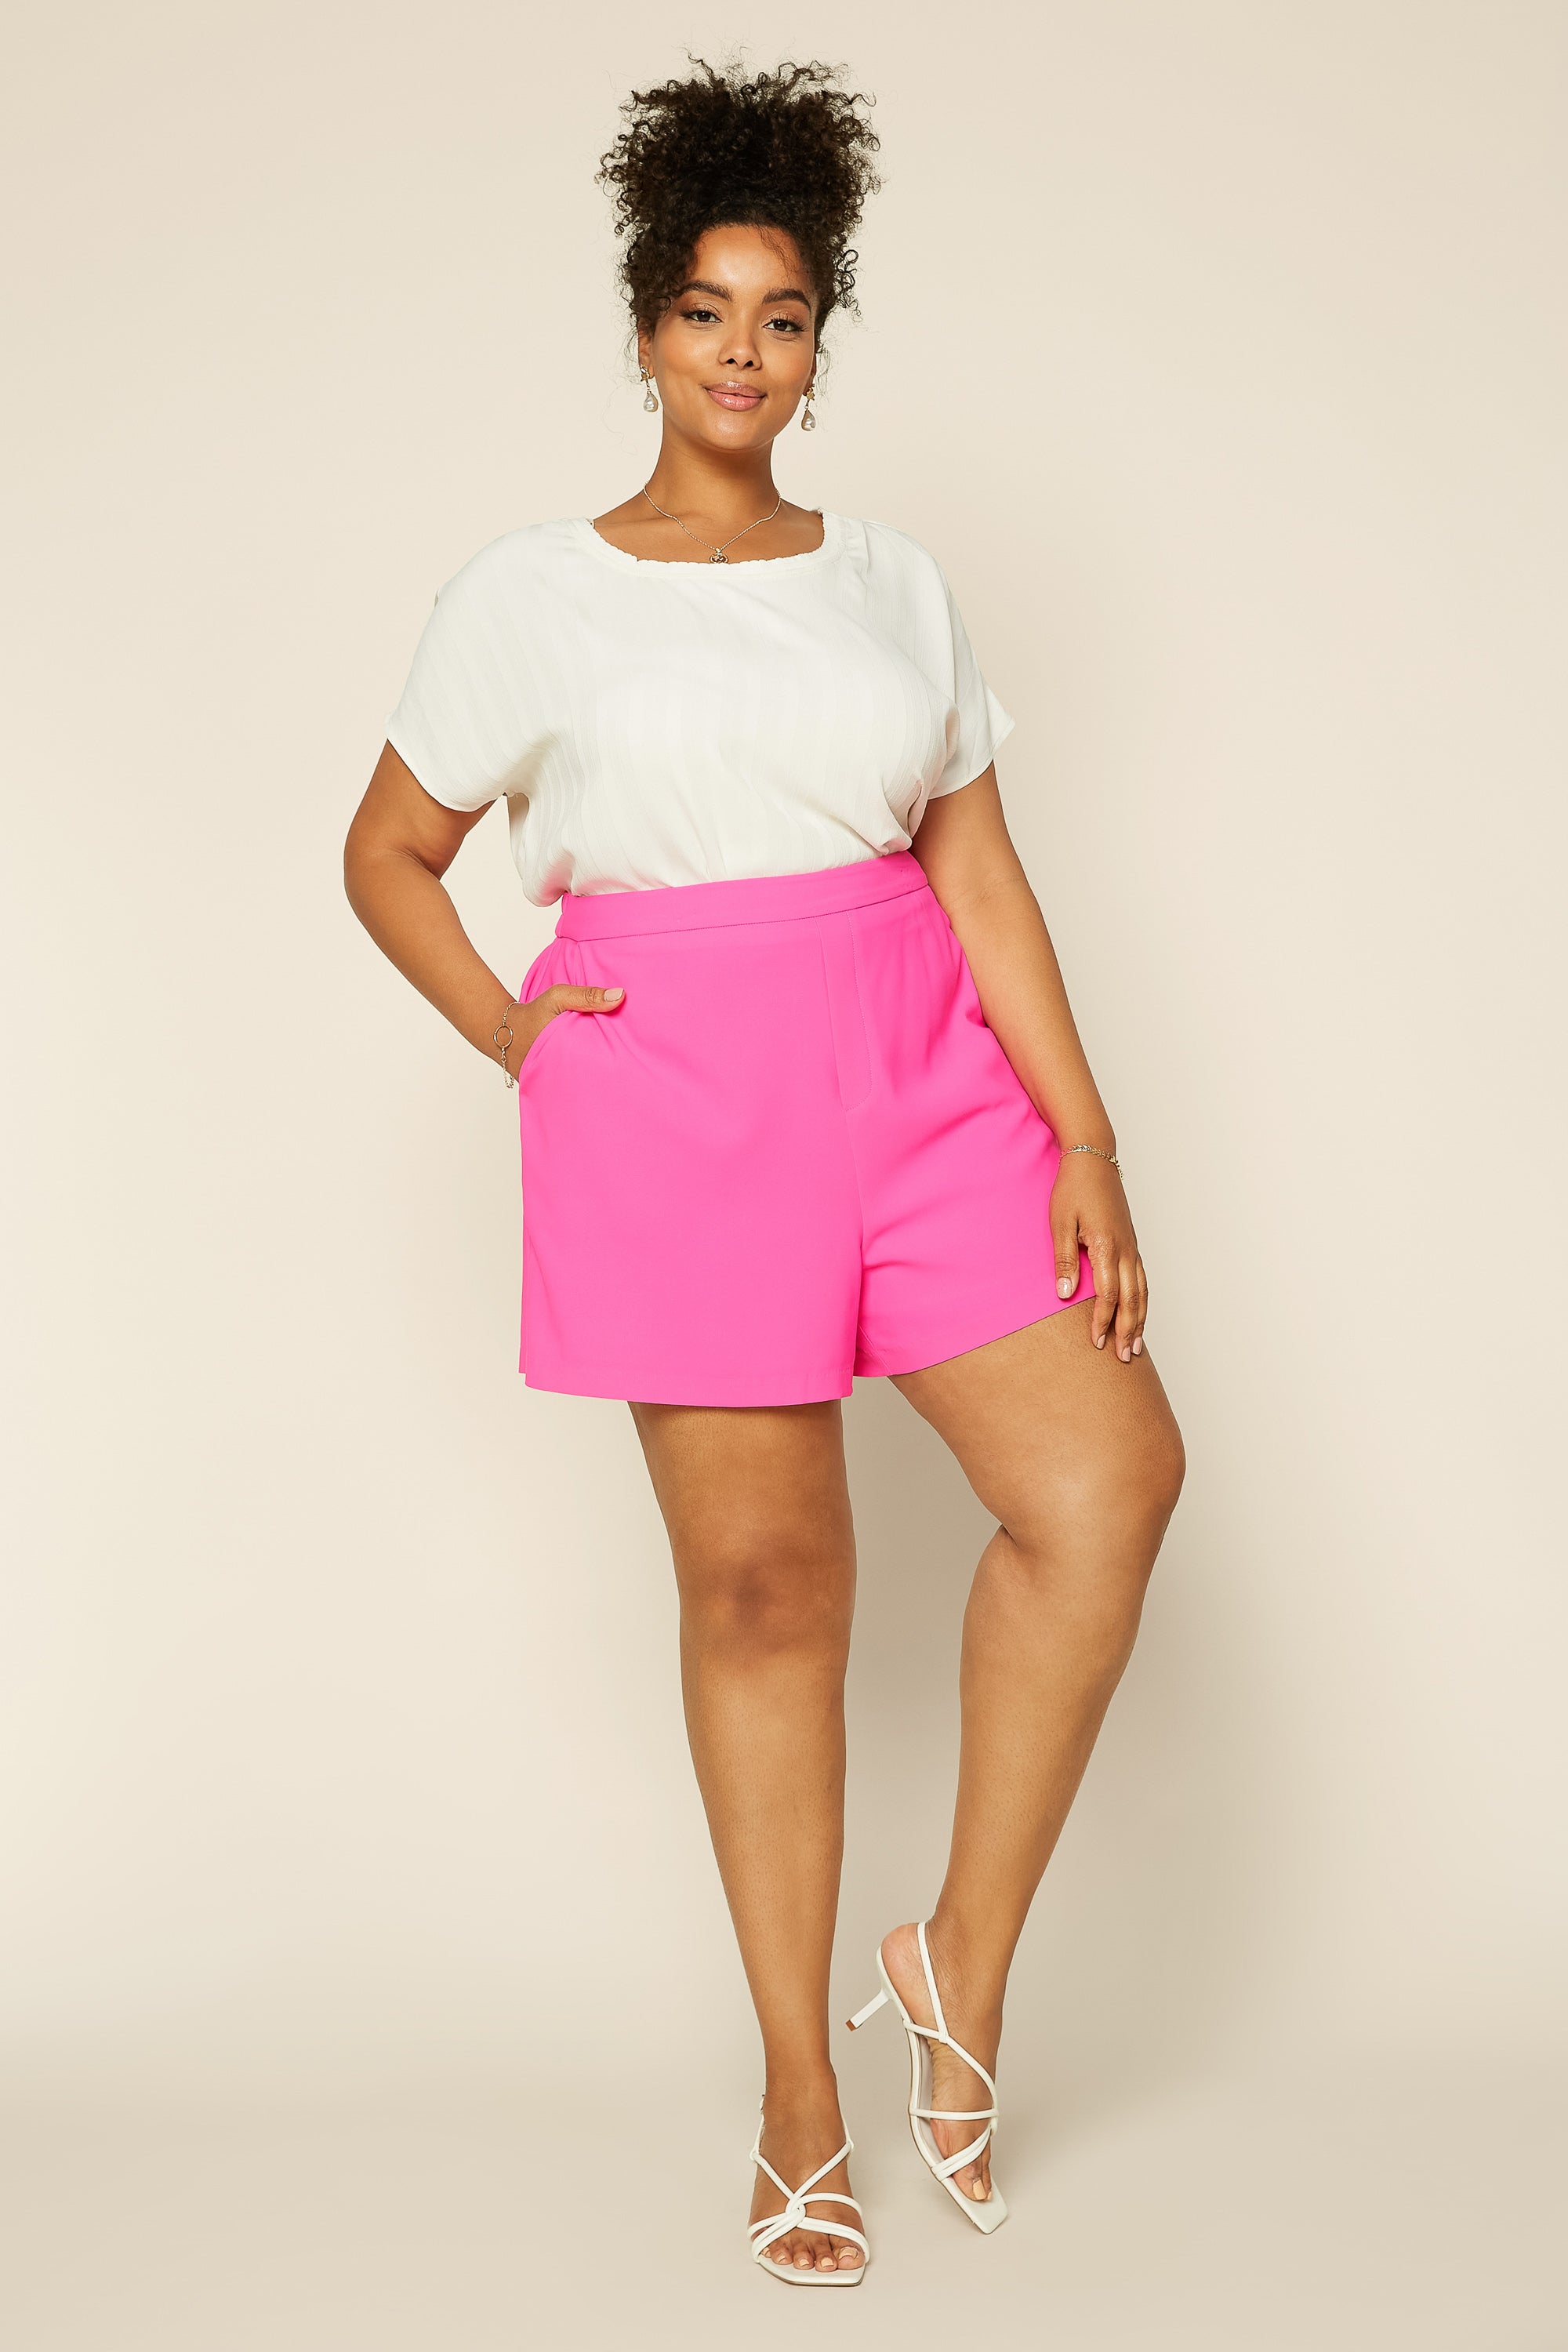 Hot pink shorts, Pink shorts outfits, Neon shorts